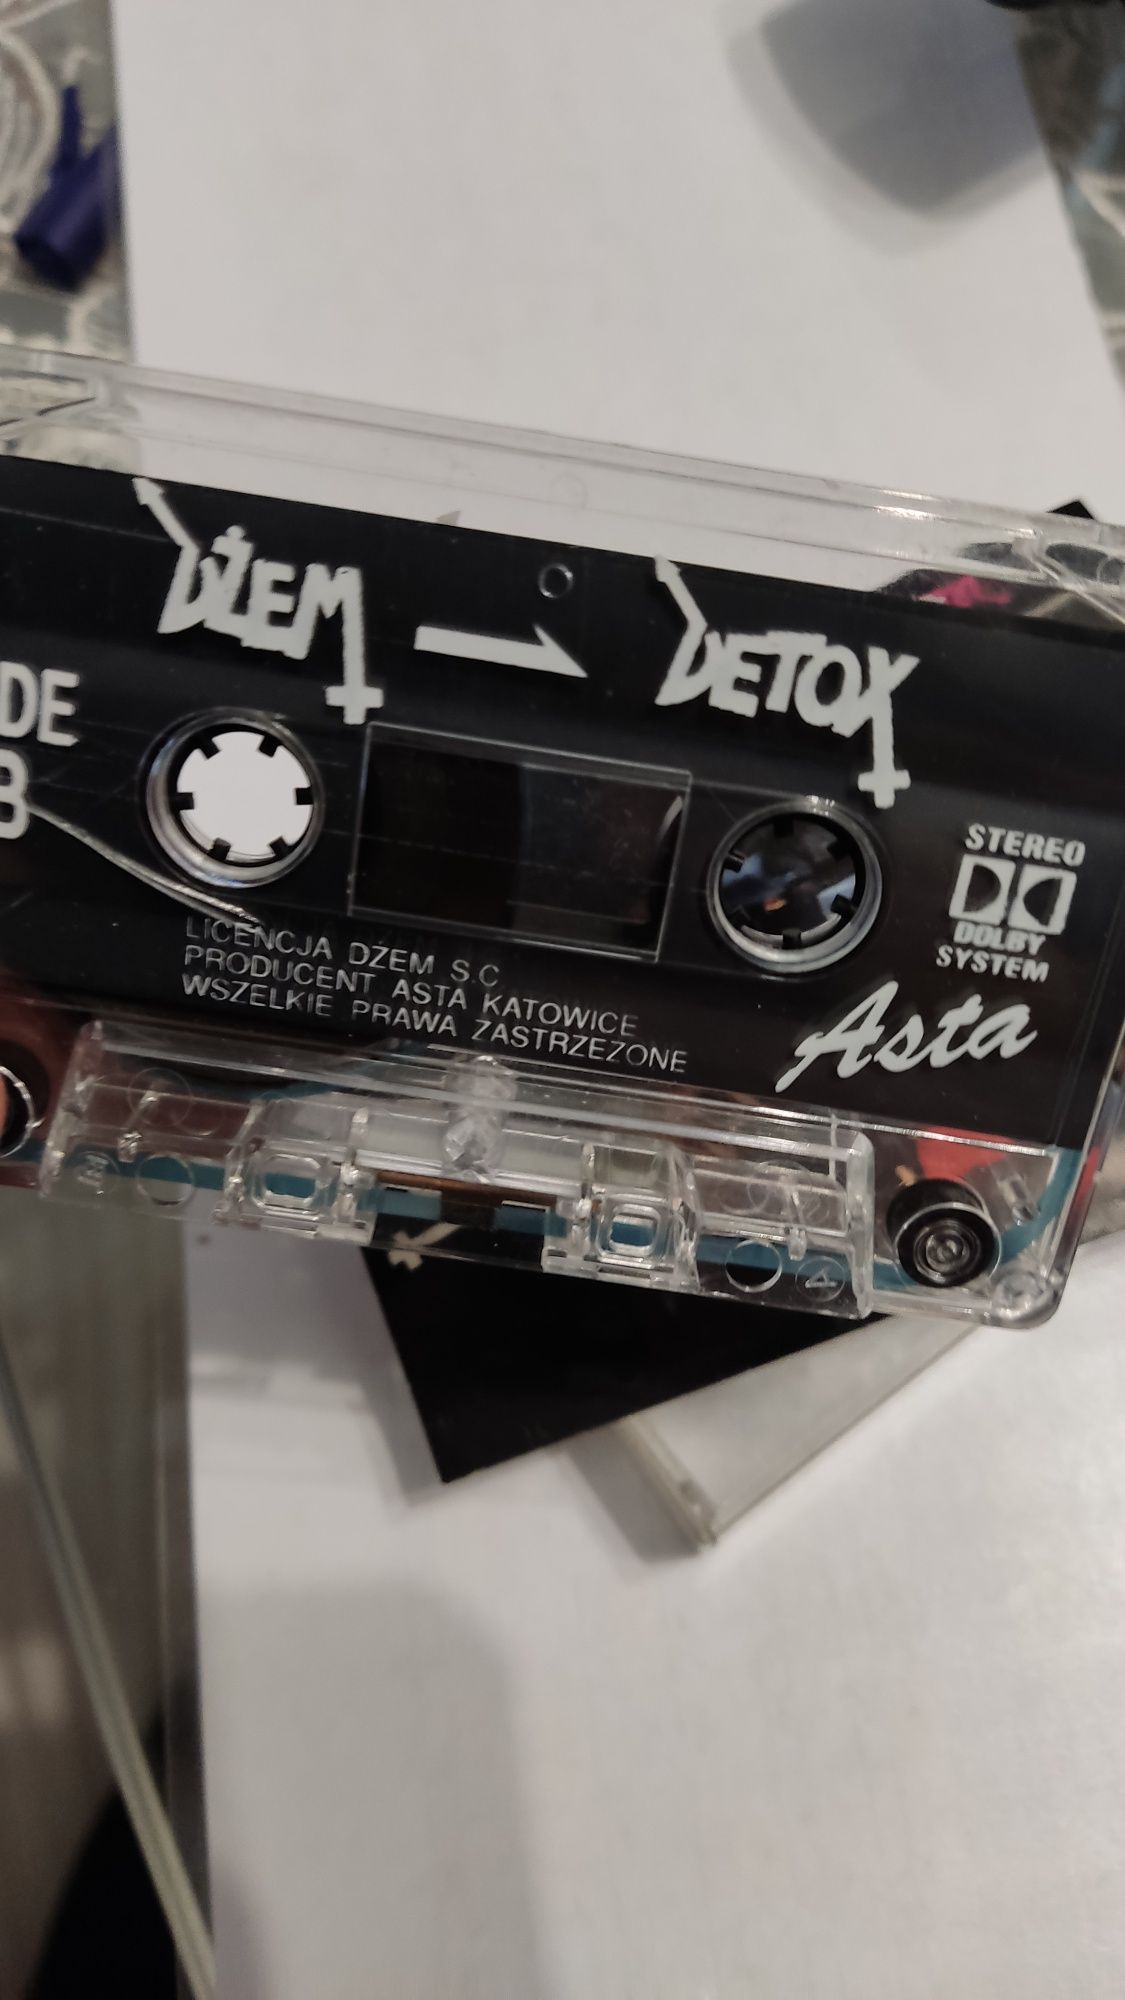 Dżem Detox kaseta audio